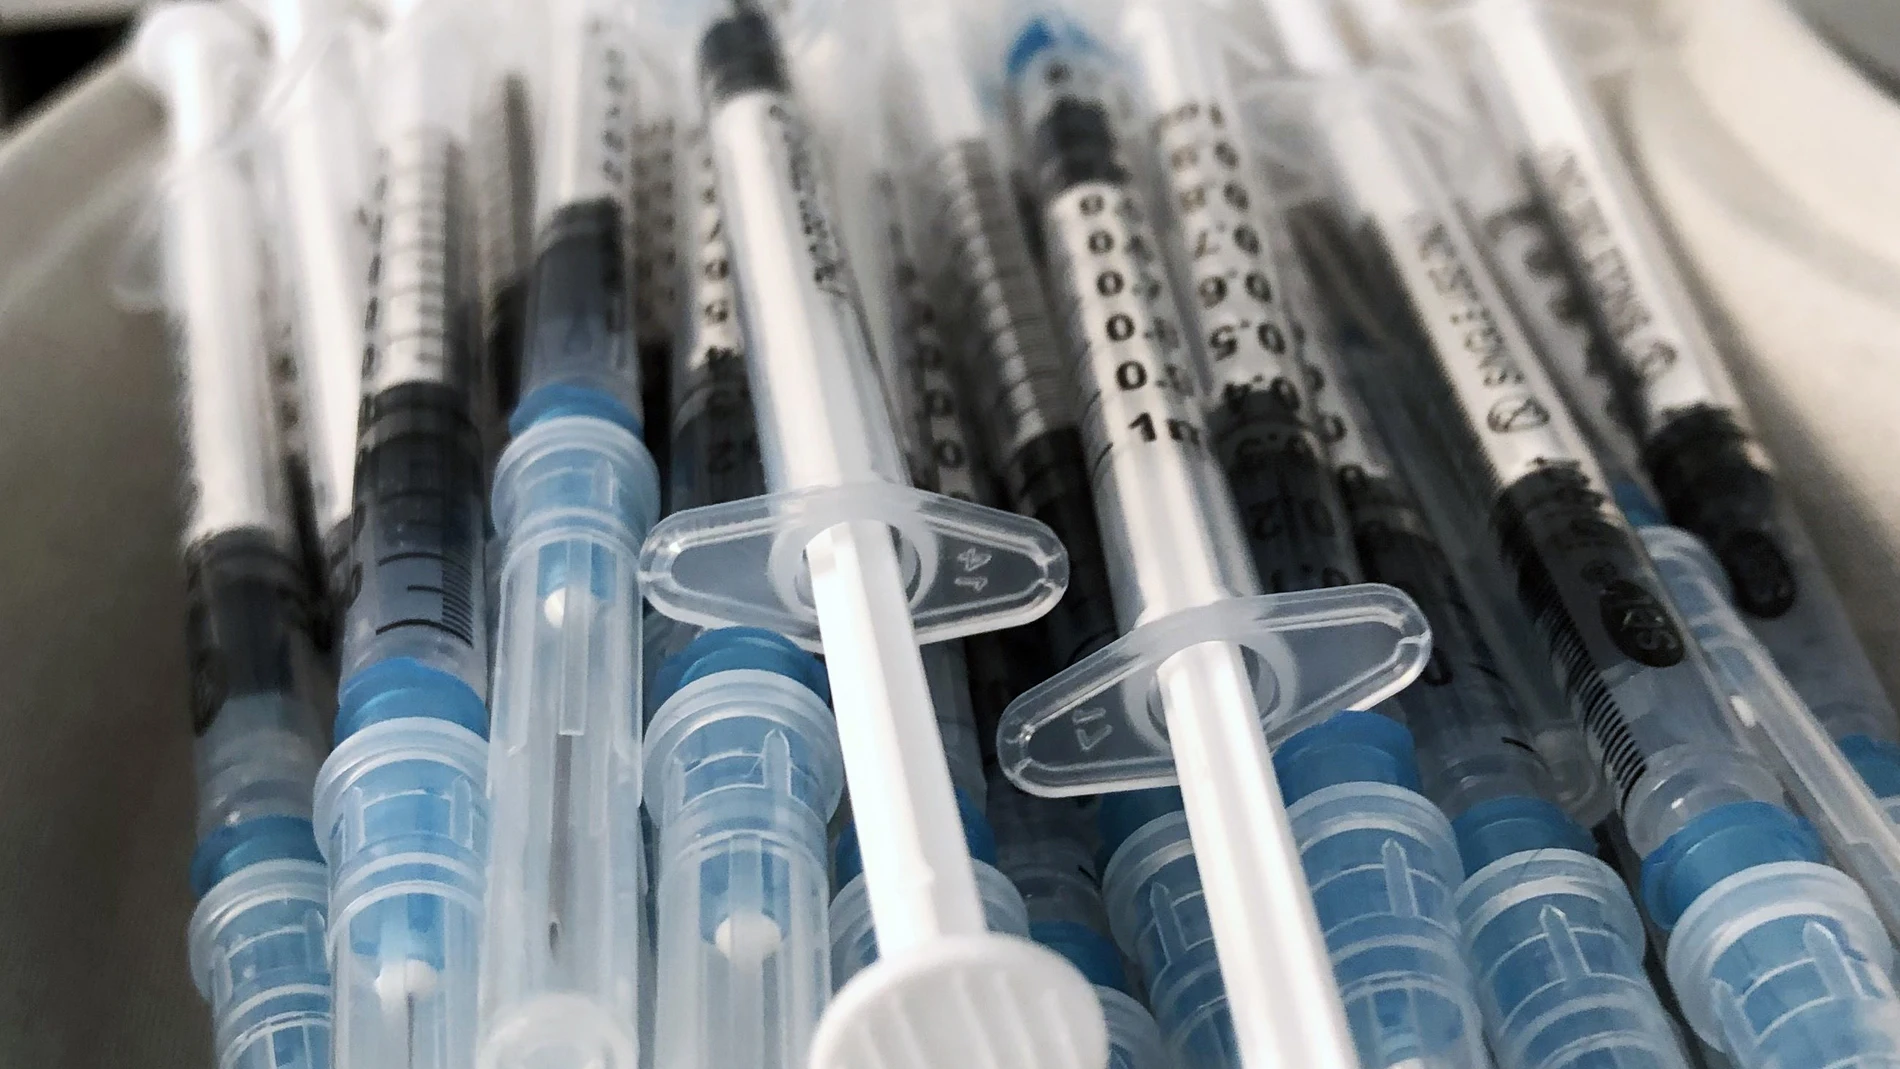 Jeringuillas cargadas con la vacuna de Pfizer contra la Covid-19 listas para inocular.